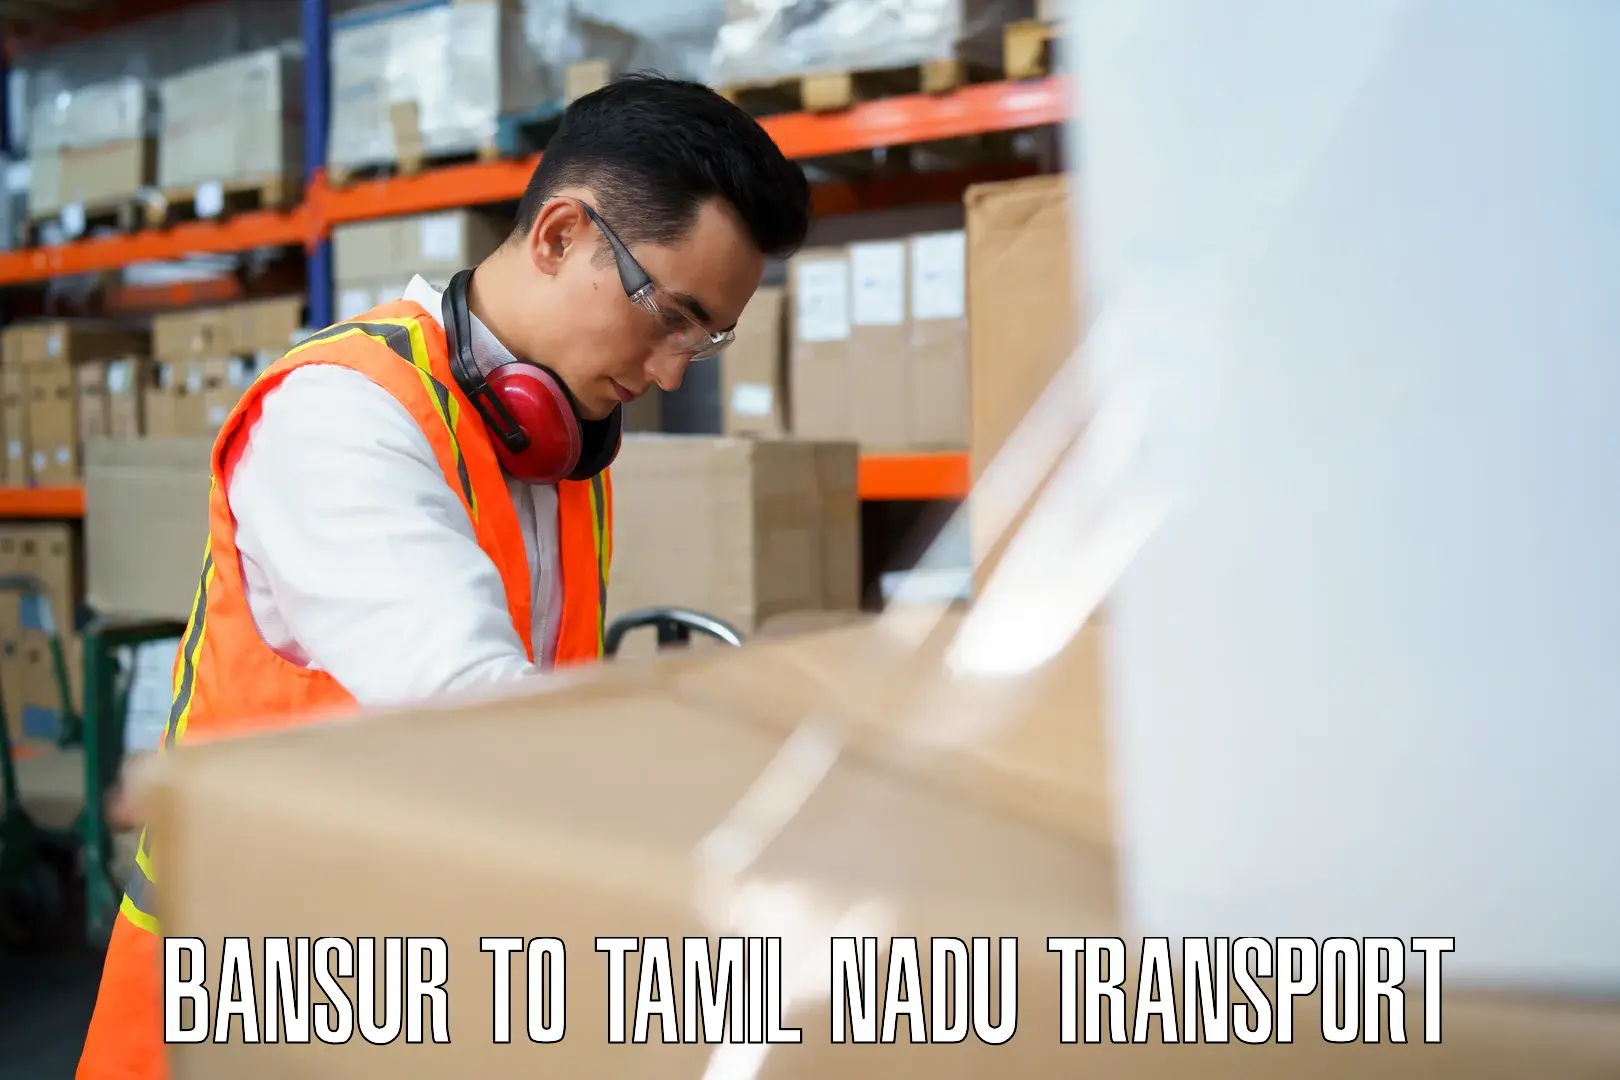 Road transport services Bansur to Tamil Nadu